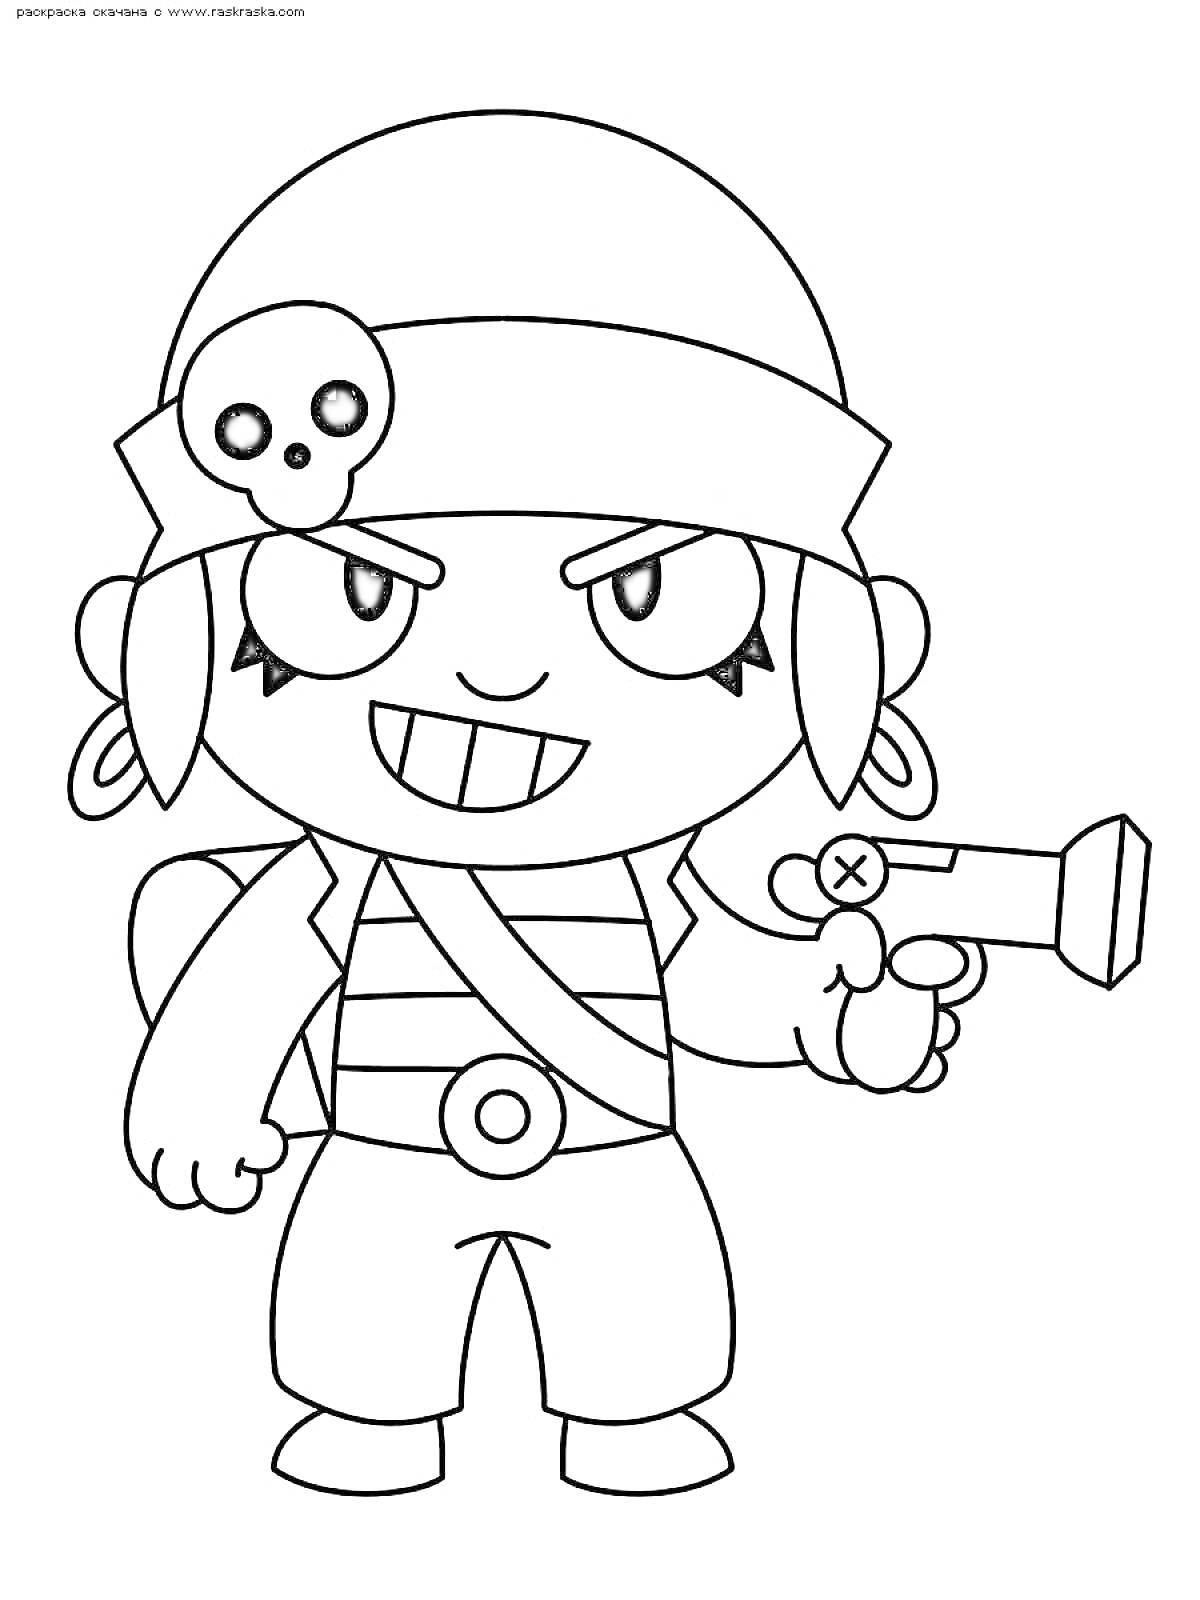 Раскраска Персонаж Честер из Brawl Stars в пиратском костюме с повязкой на голове, пистолетом, черепом на повязке и рюкзаком